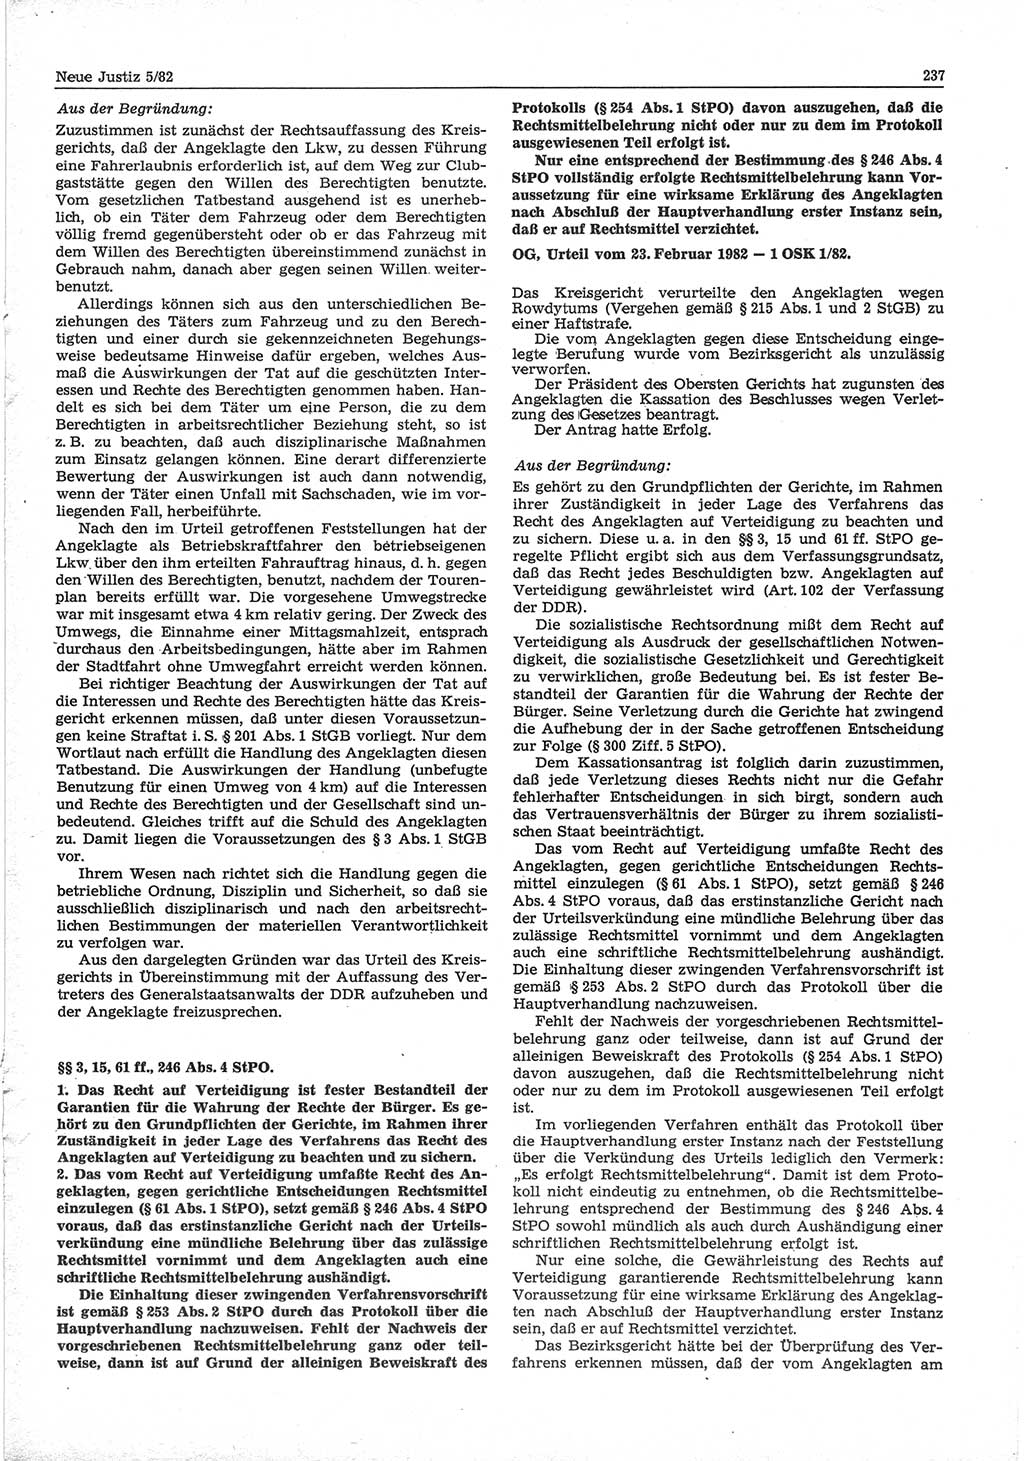 Neue Justiz (NJ), Zeitschrift für sozialistisches Recht und Gesetzlichkeit [Deutsche Demokratische Republik (DDR)], 36. Jahrgang 1982, Seite 237 (NJ DDR 1982, S. 237)